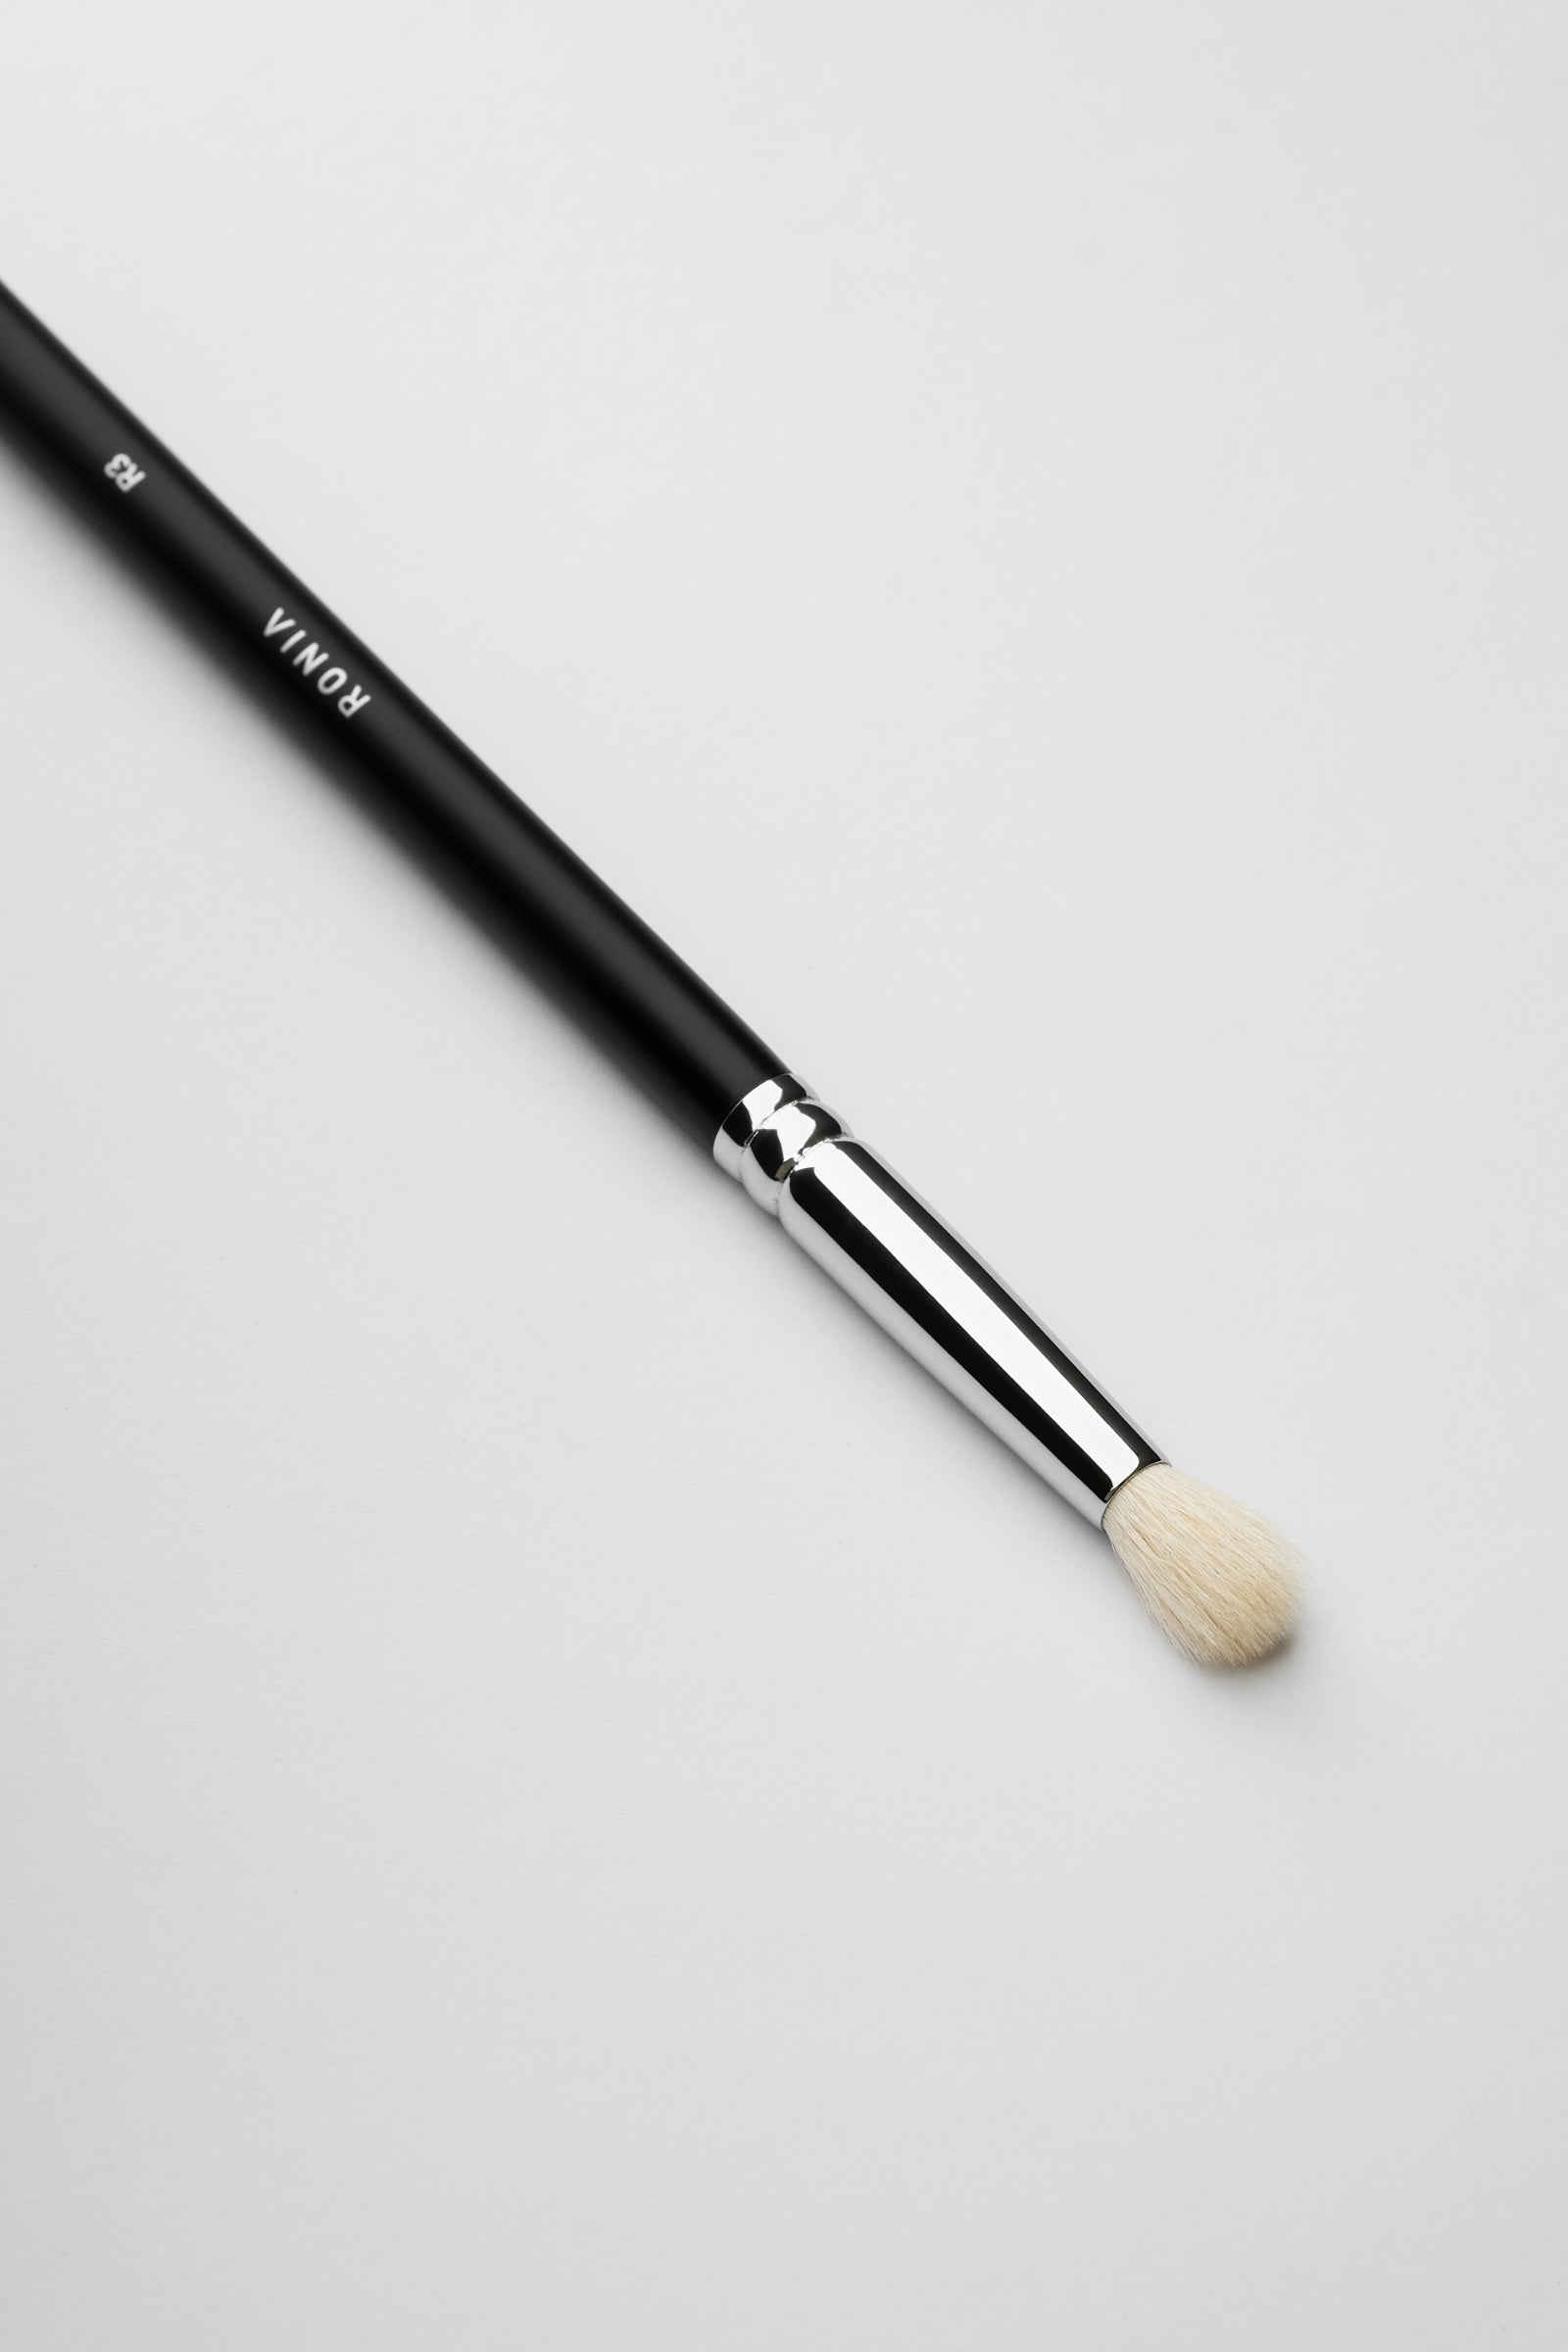 R3 - Wide eyeshadow blending brush